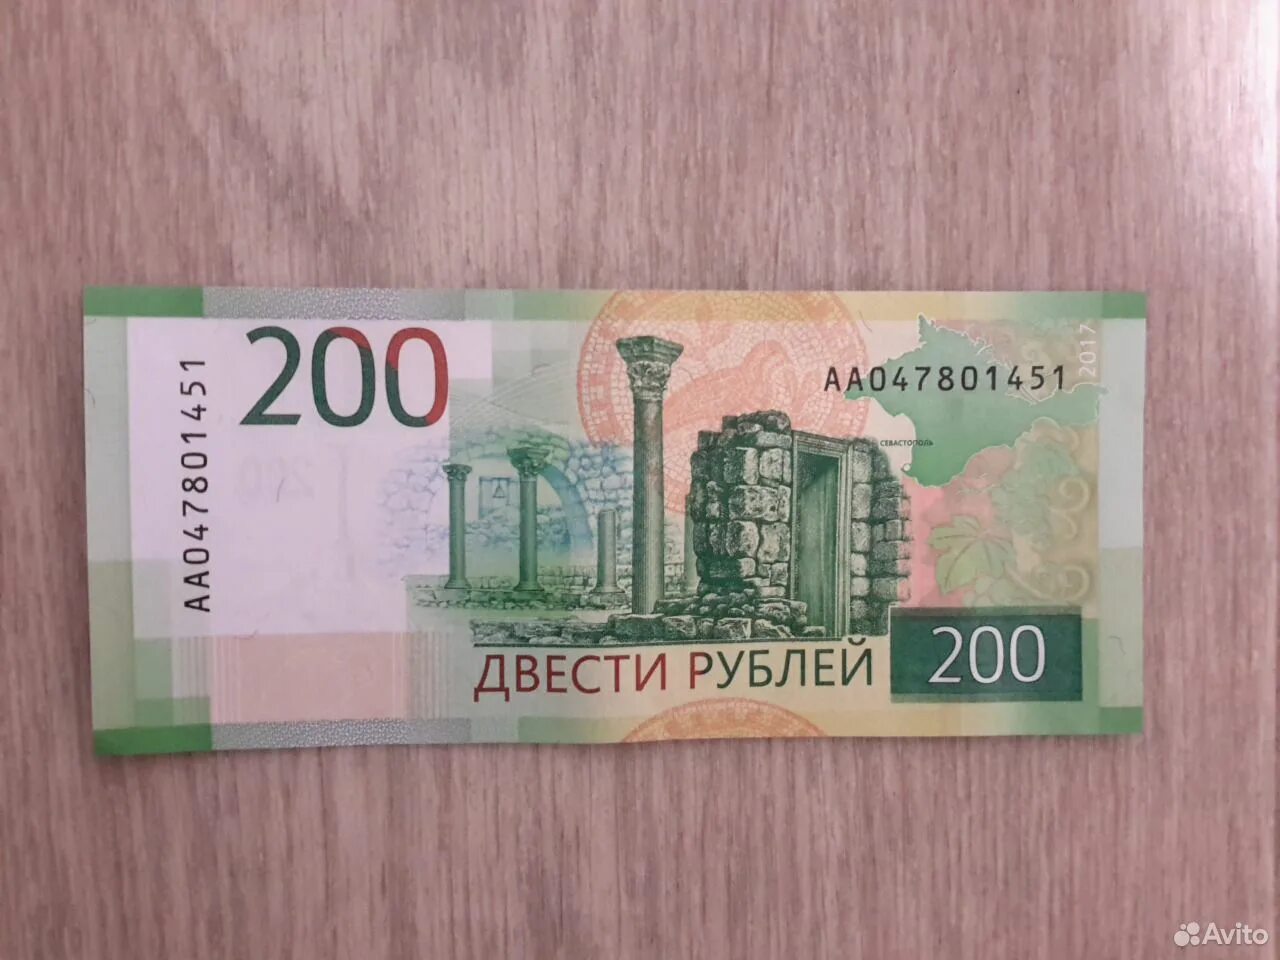 Как получить 200 рублей